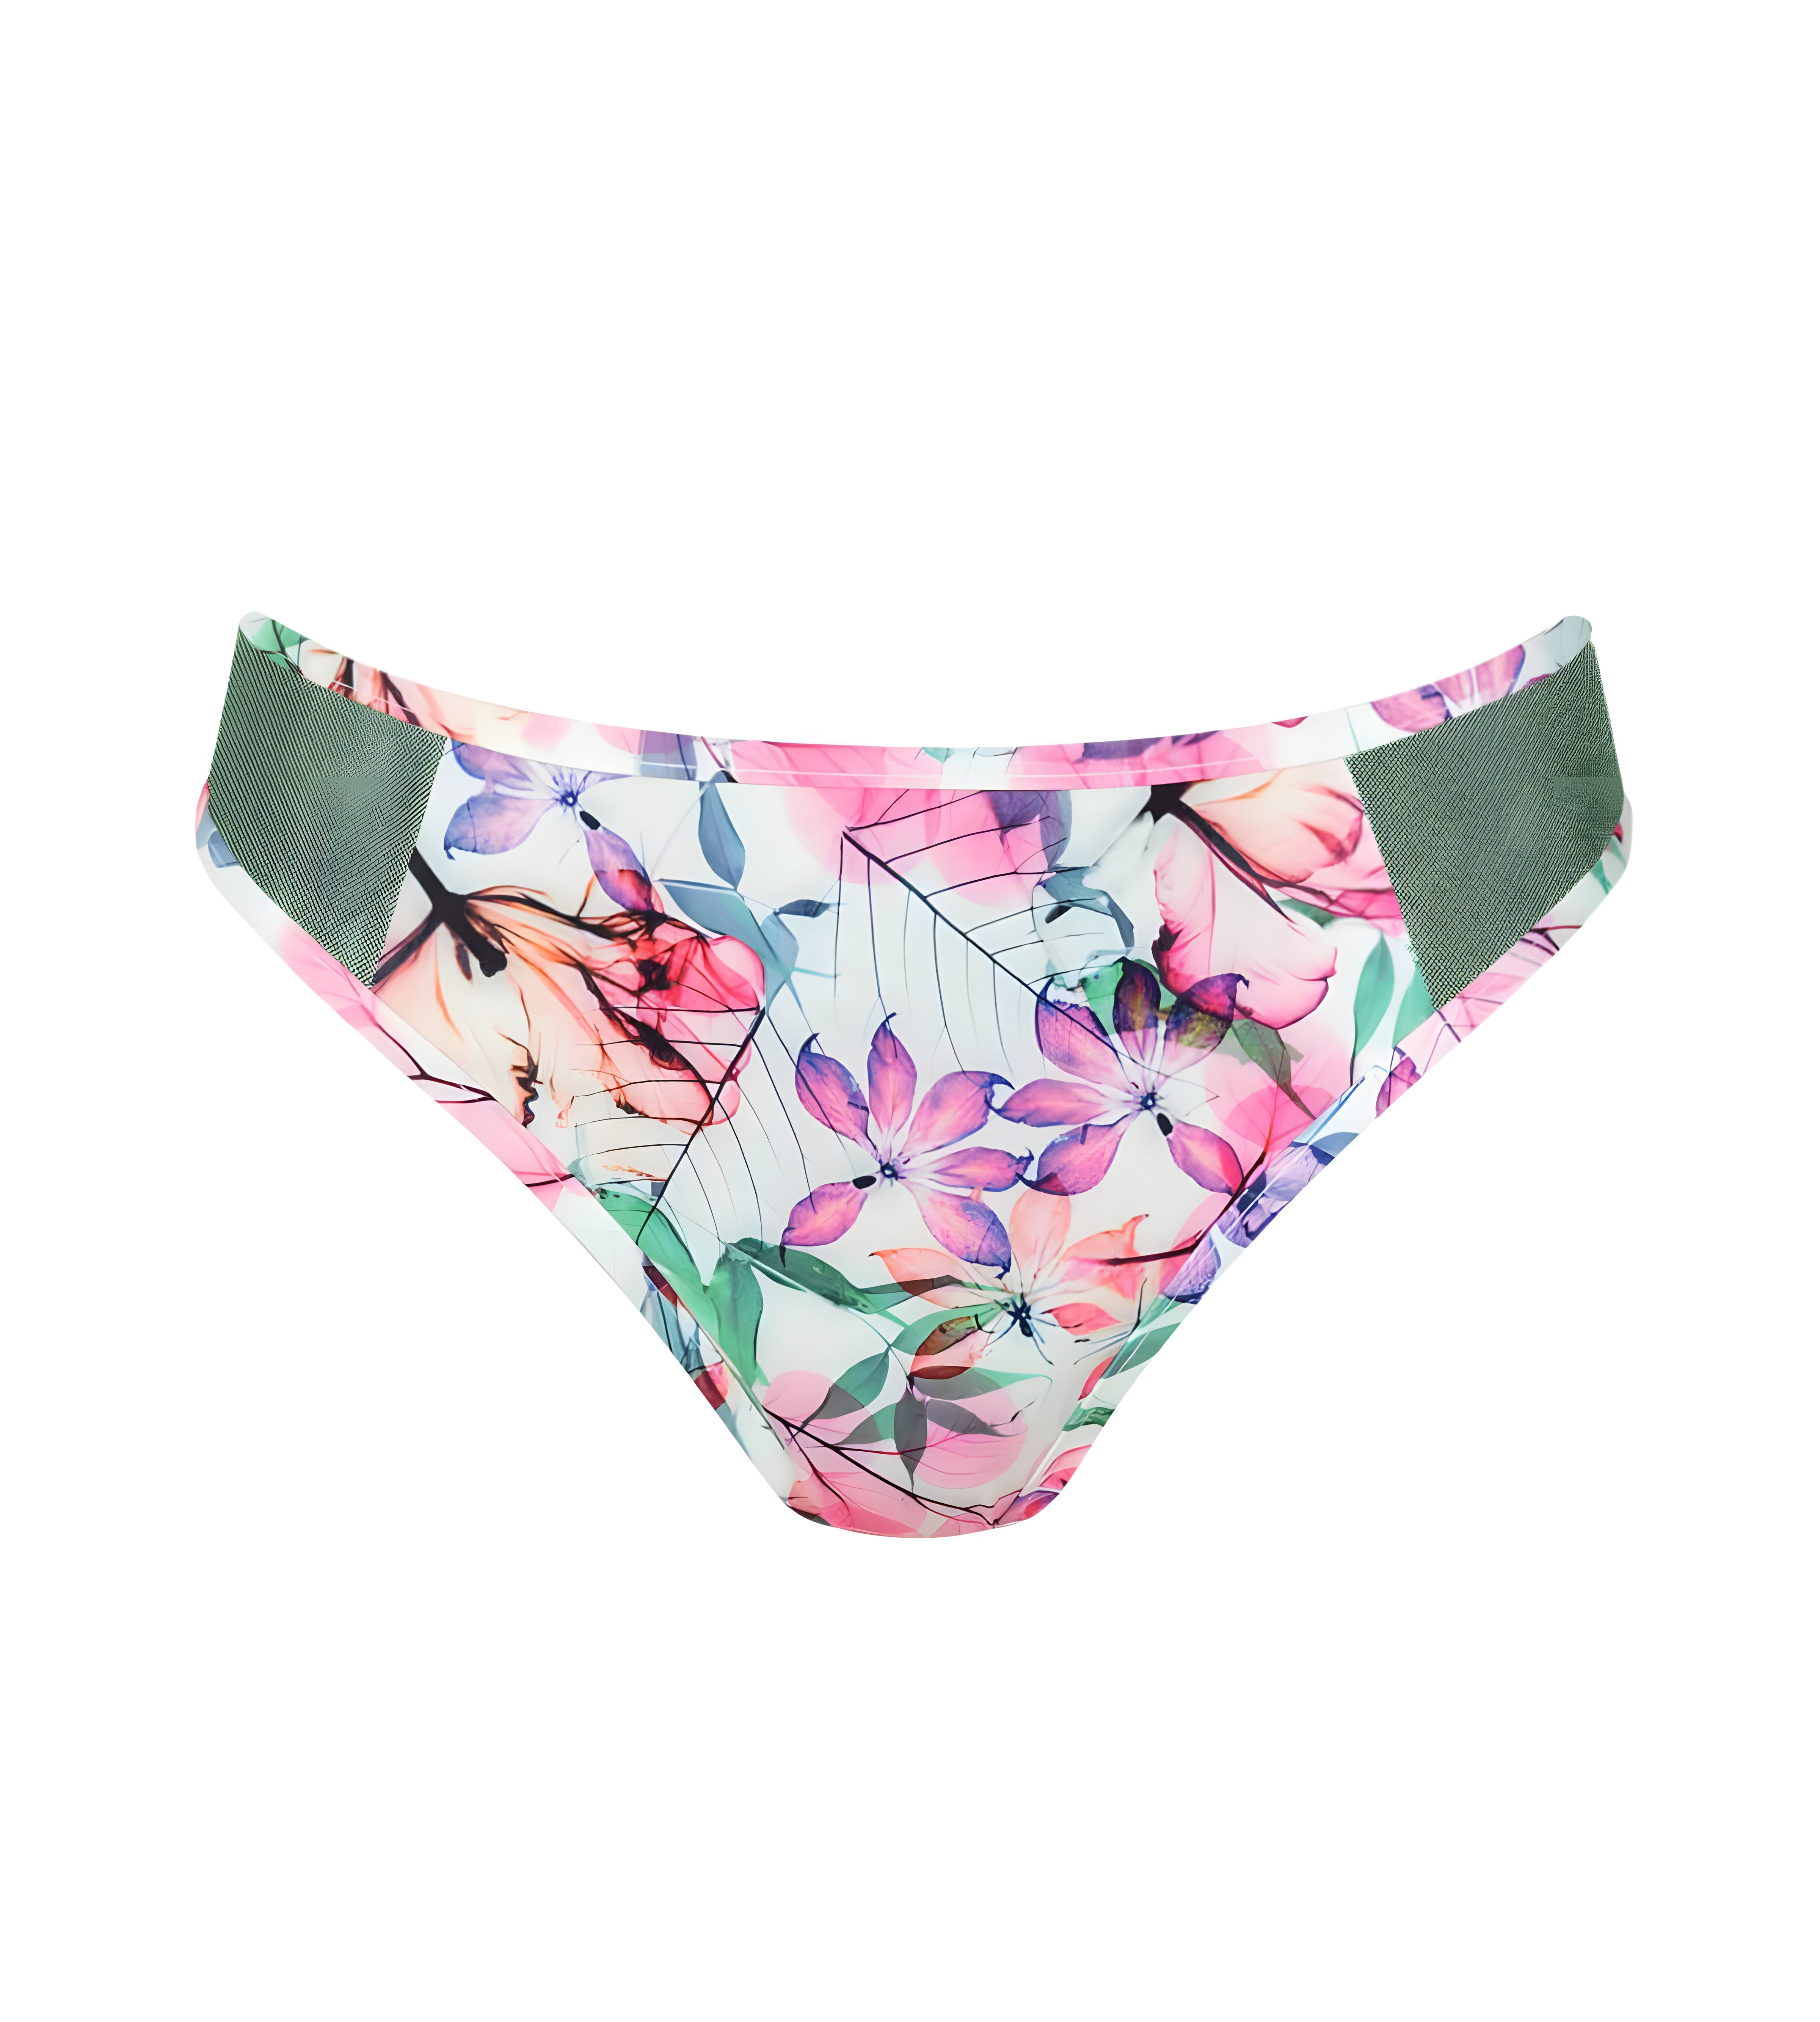 Dámské plavkové kalhotky Delicate Flowers Frenchie - Triumph světlá kombinace růžové (M019) 0040